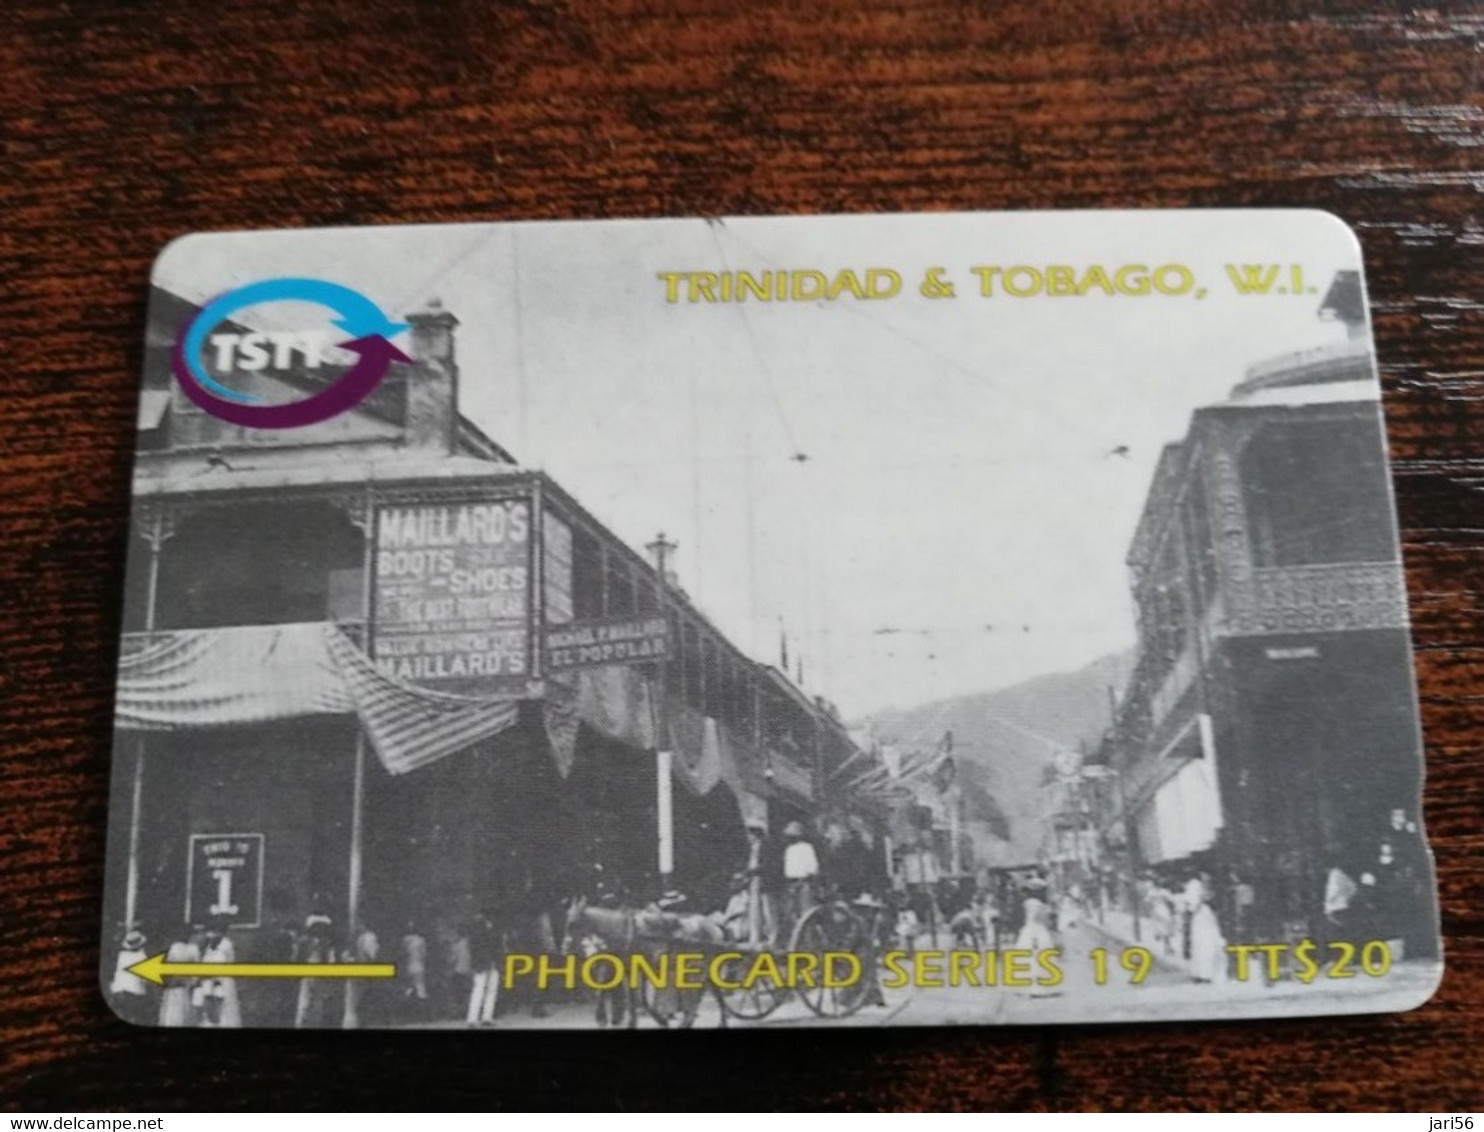 TRINIDAD & TOBAGO  GPT CARD    $20,-  249CCTA    THE ROOT OF FREDERICK TREET             Fine Used Card        ** 8908** - Trinidad & Tobago